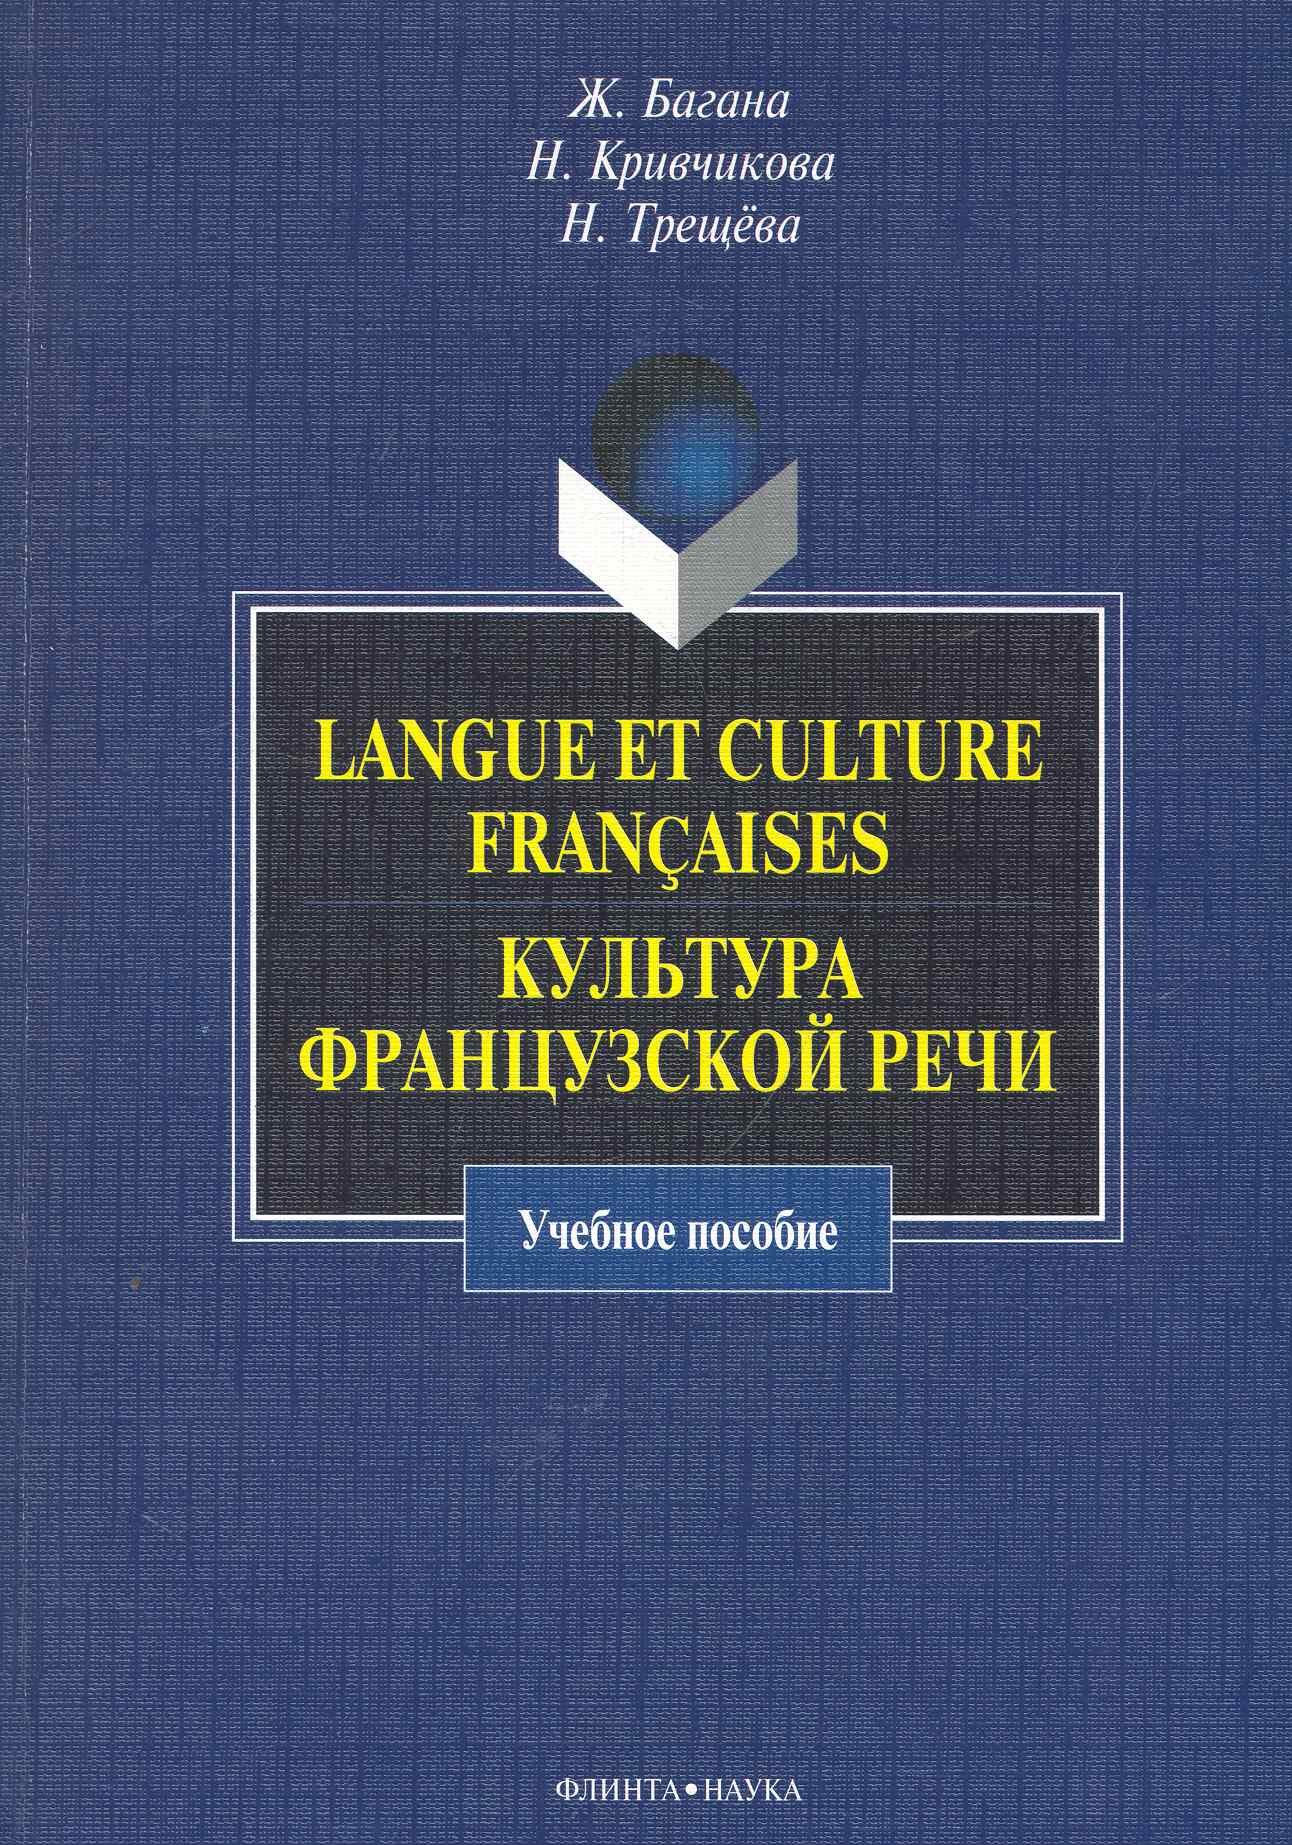 Langue et culture francaises.   : .  / ().  ., ., ., ()  ,    - : 6896057